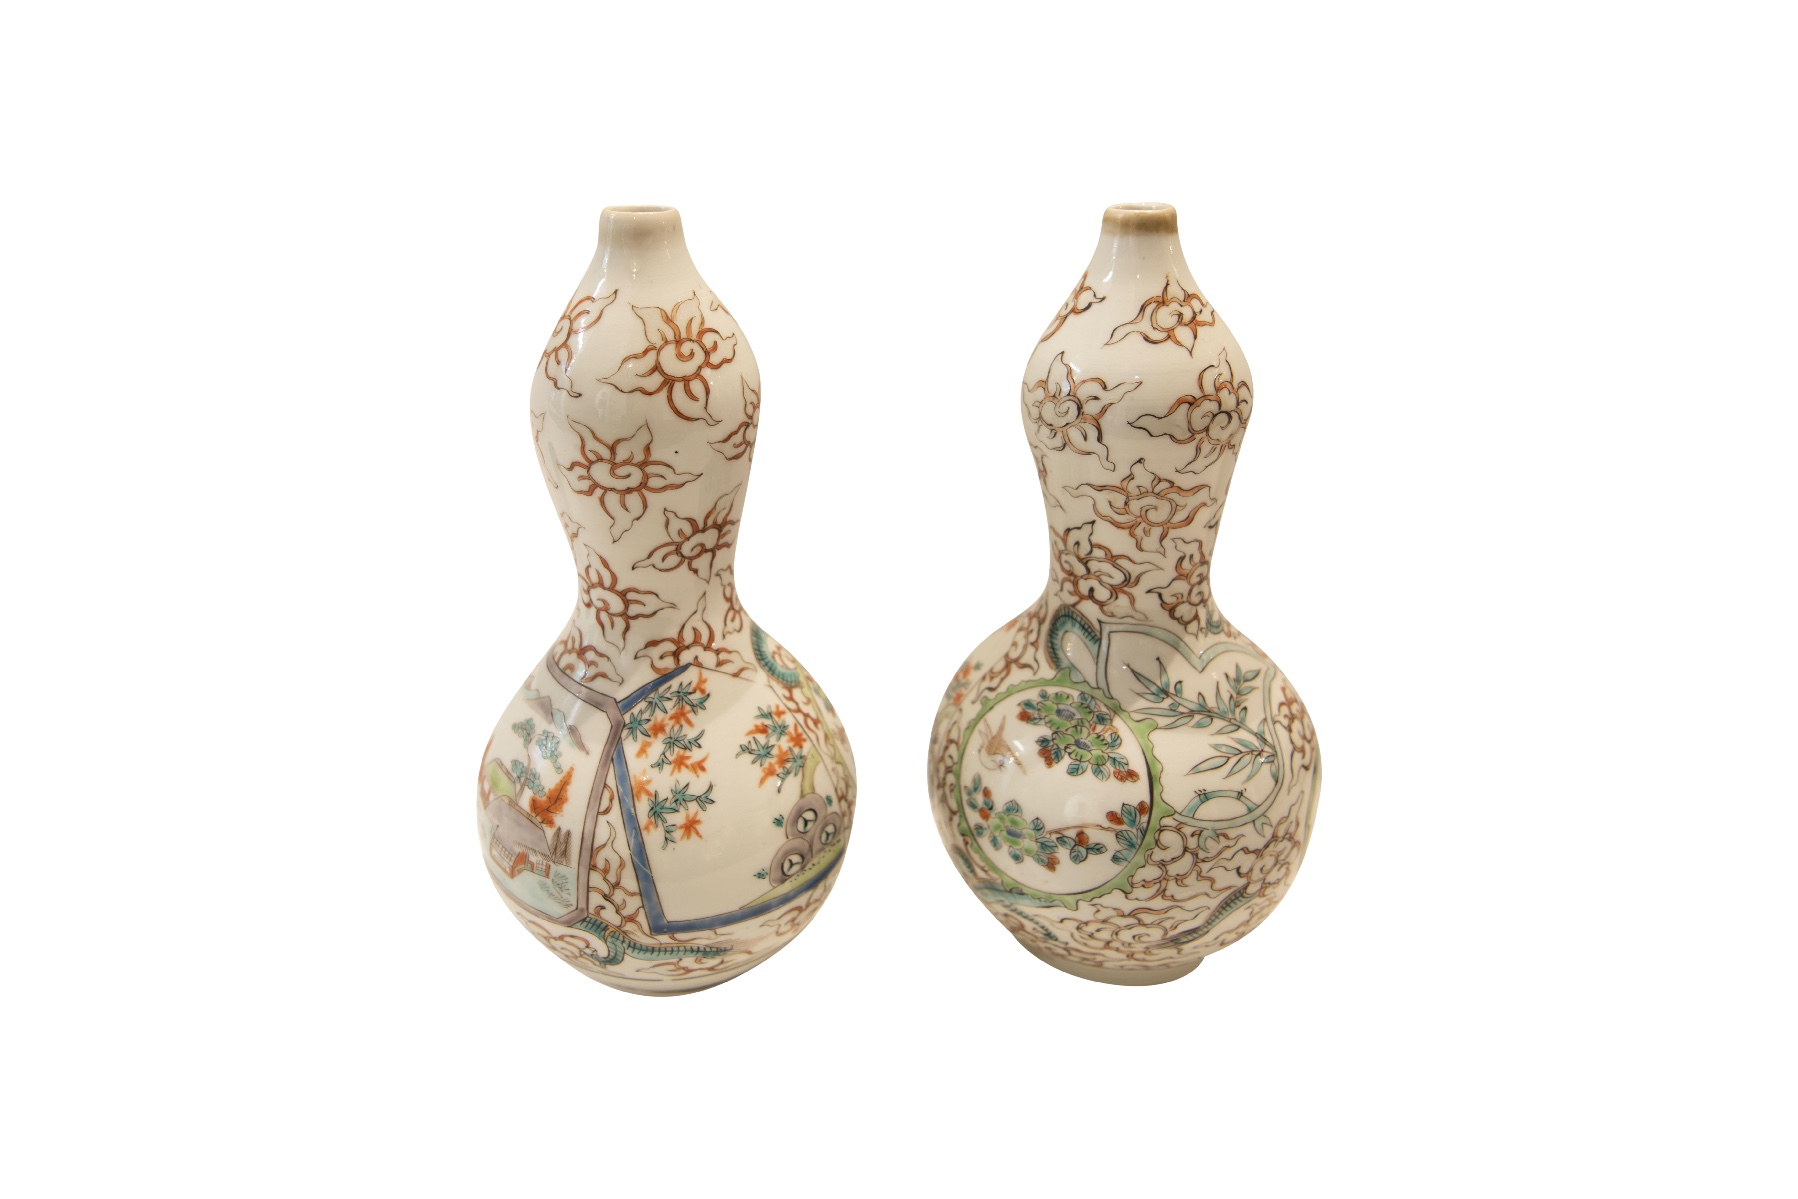 Zwei Asiatische Vasen | Two Asian vases - Image 2 of 5